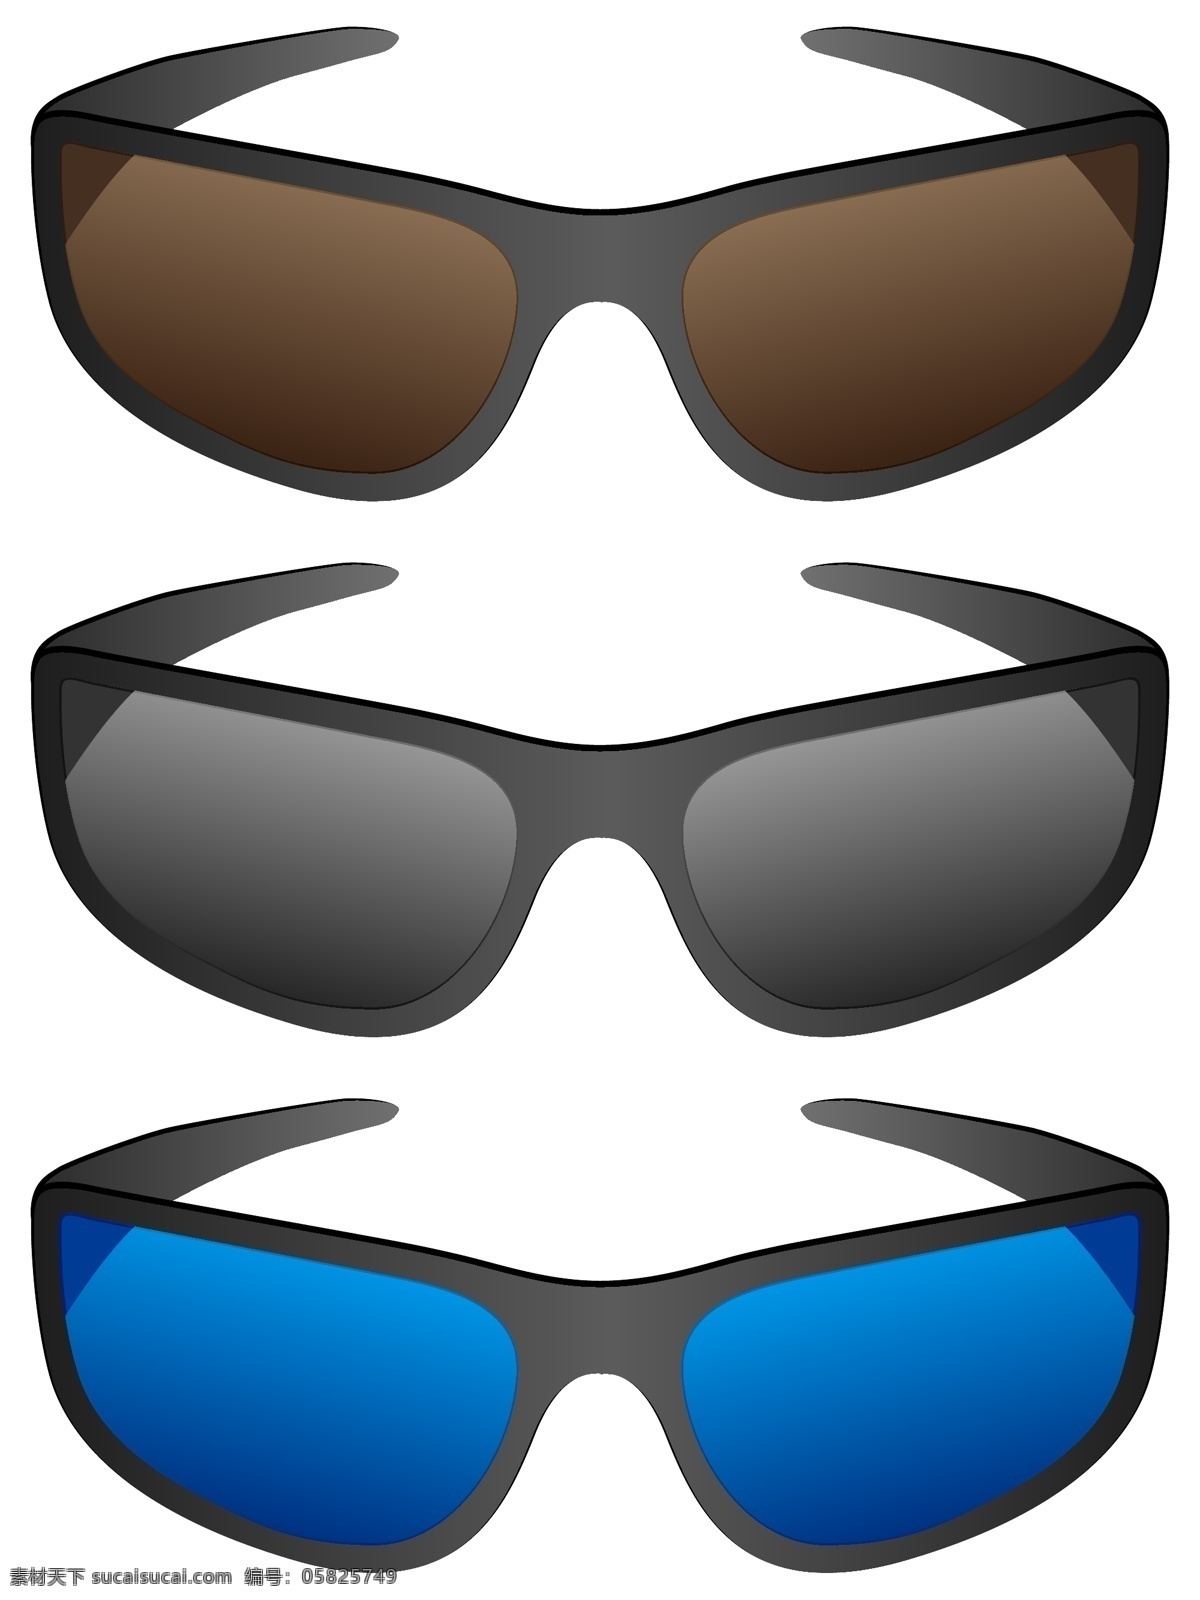 彩色 眼镜 设计素材 眼镜设计 眼镜素材 矢量眼镜 滑雪眼镜 墨镜 矢量素材 彩色眼镜 生活用品 生活百科 白色